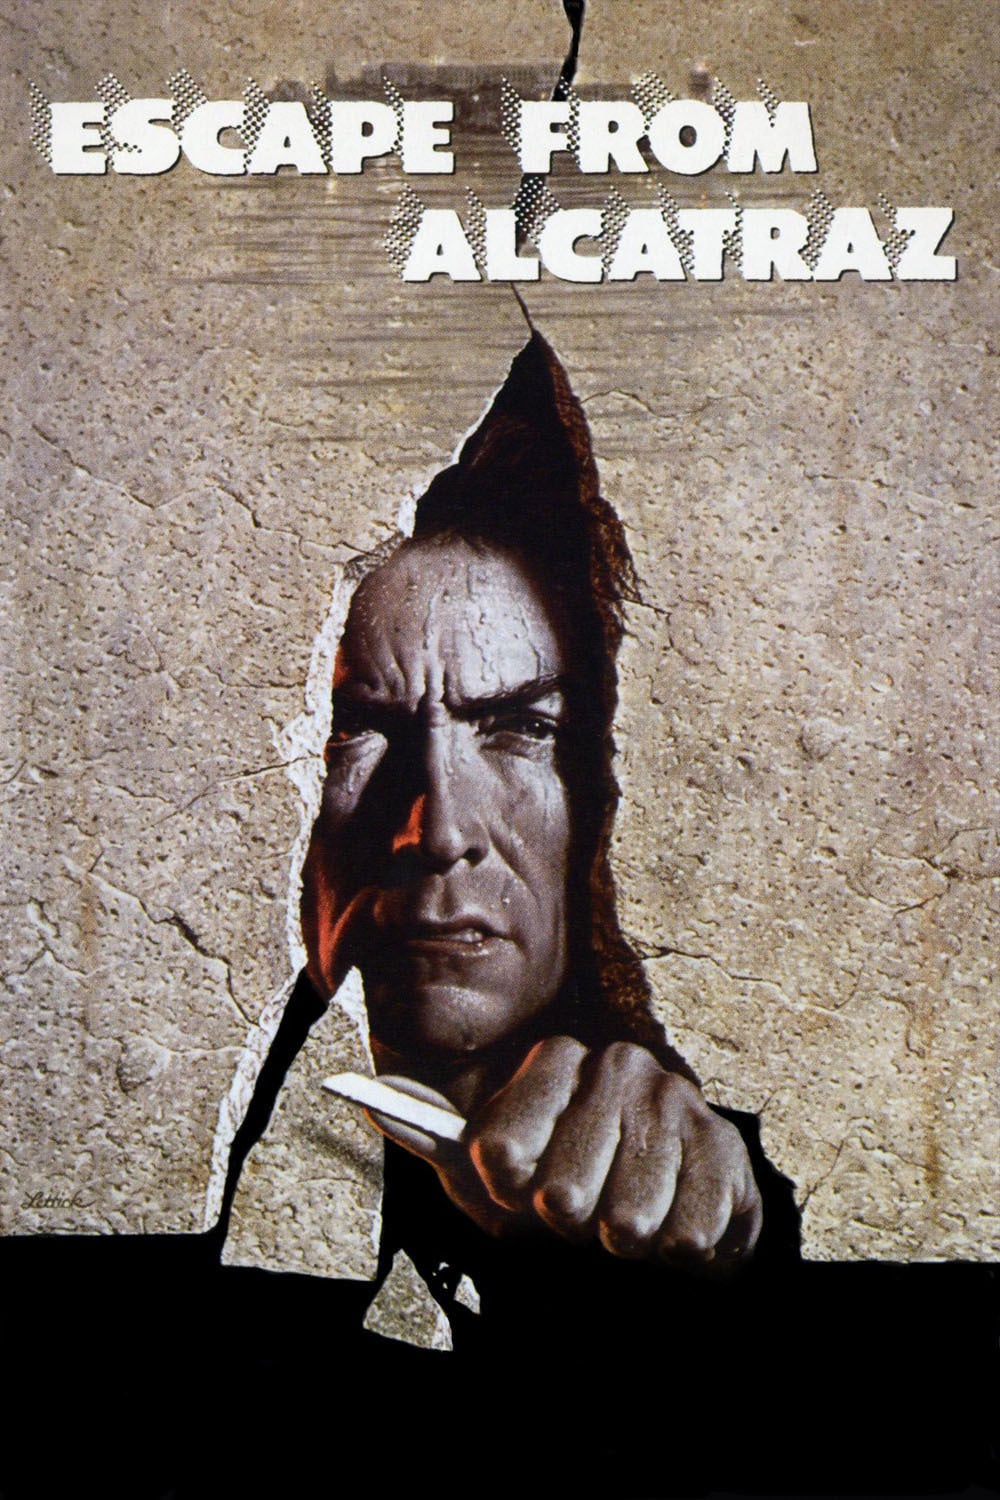 Poster for the movie "Escape from Alcatraz"